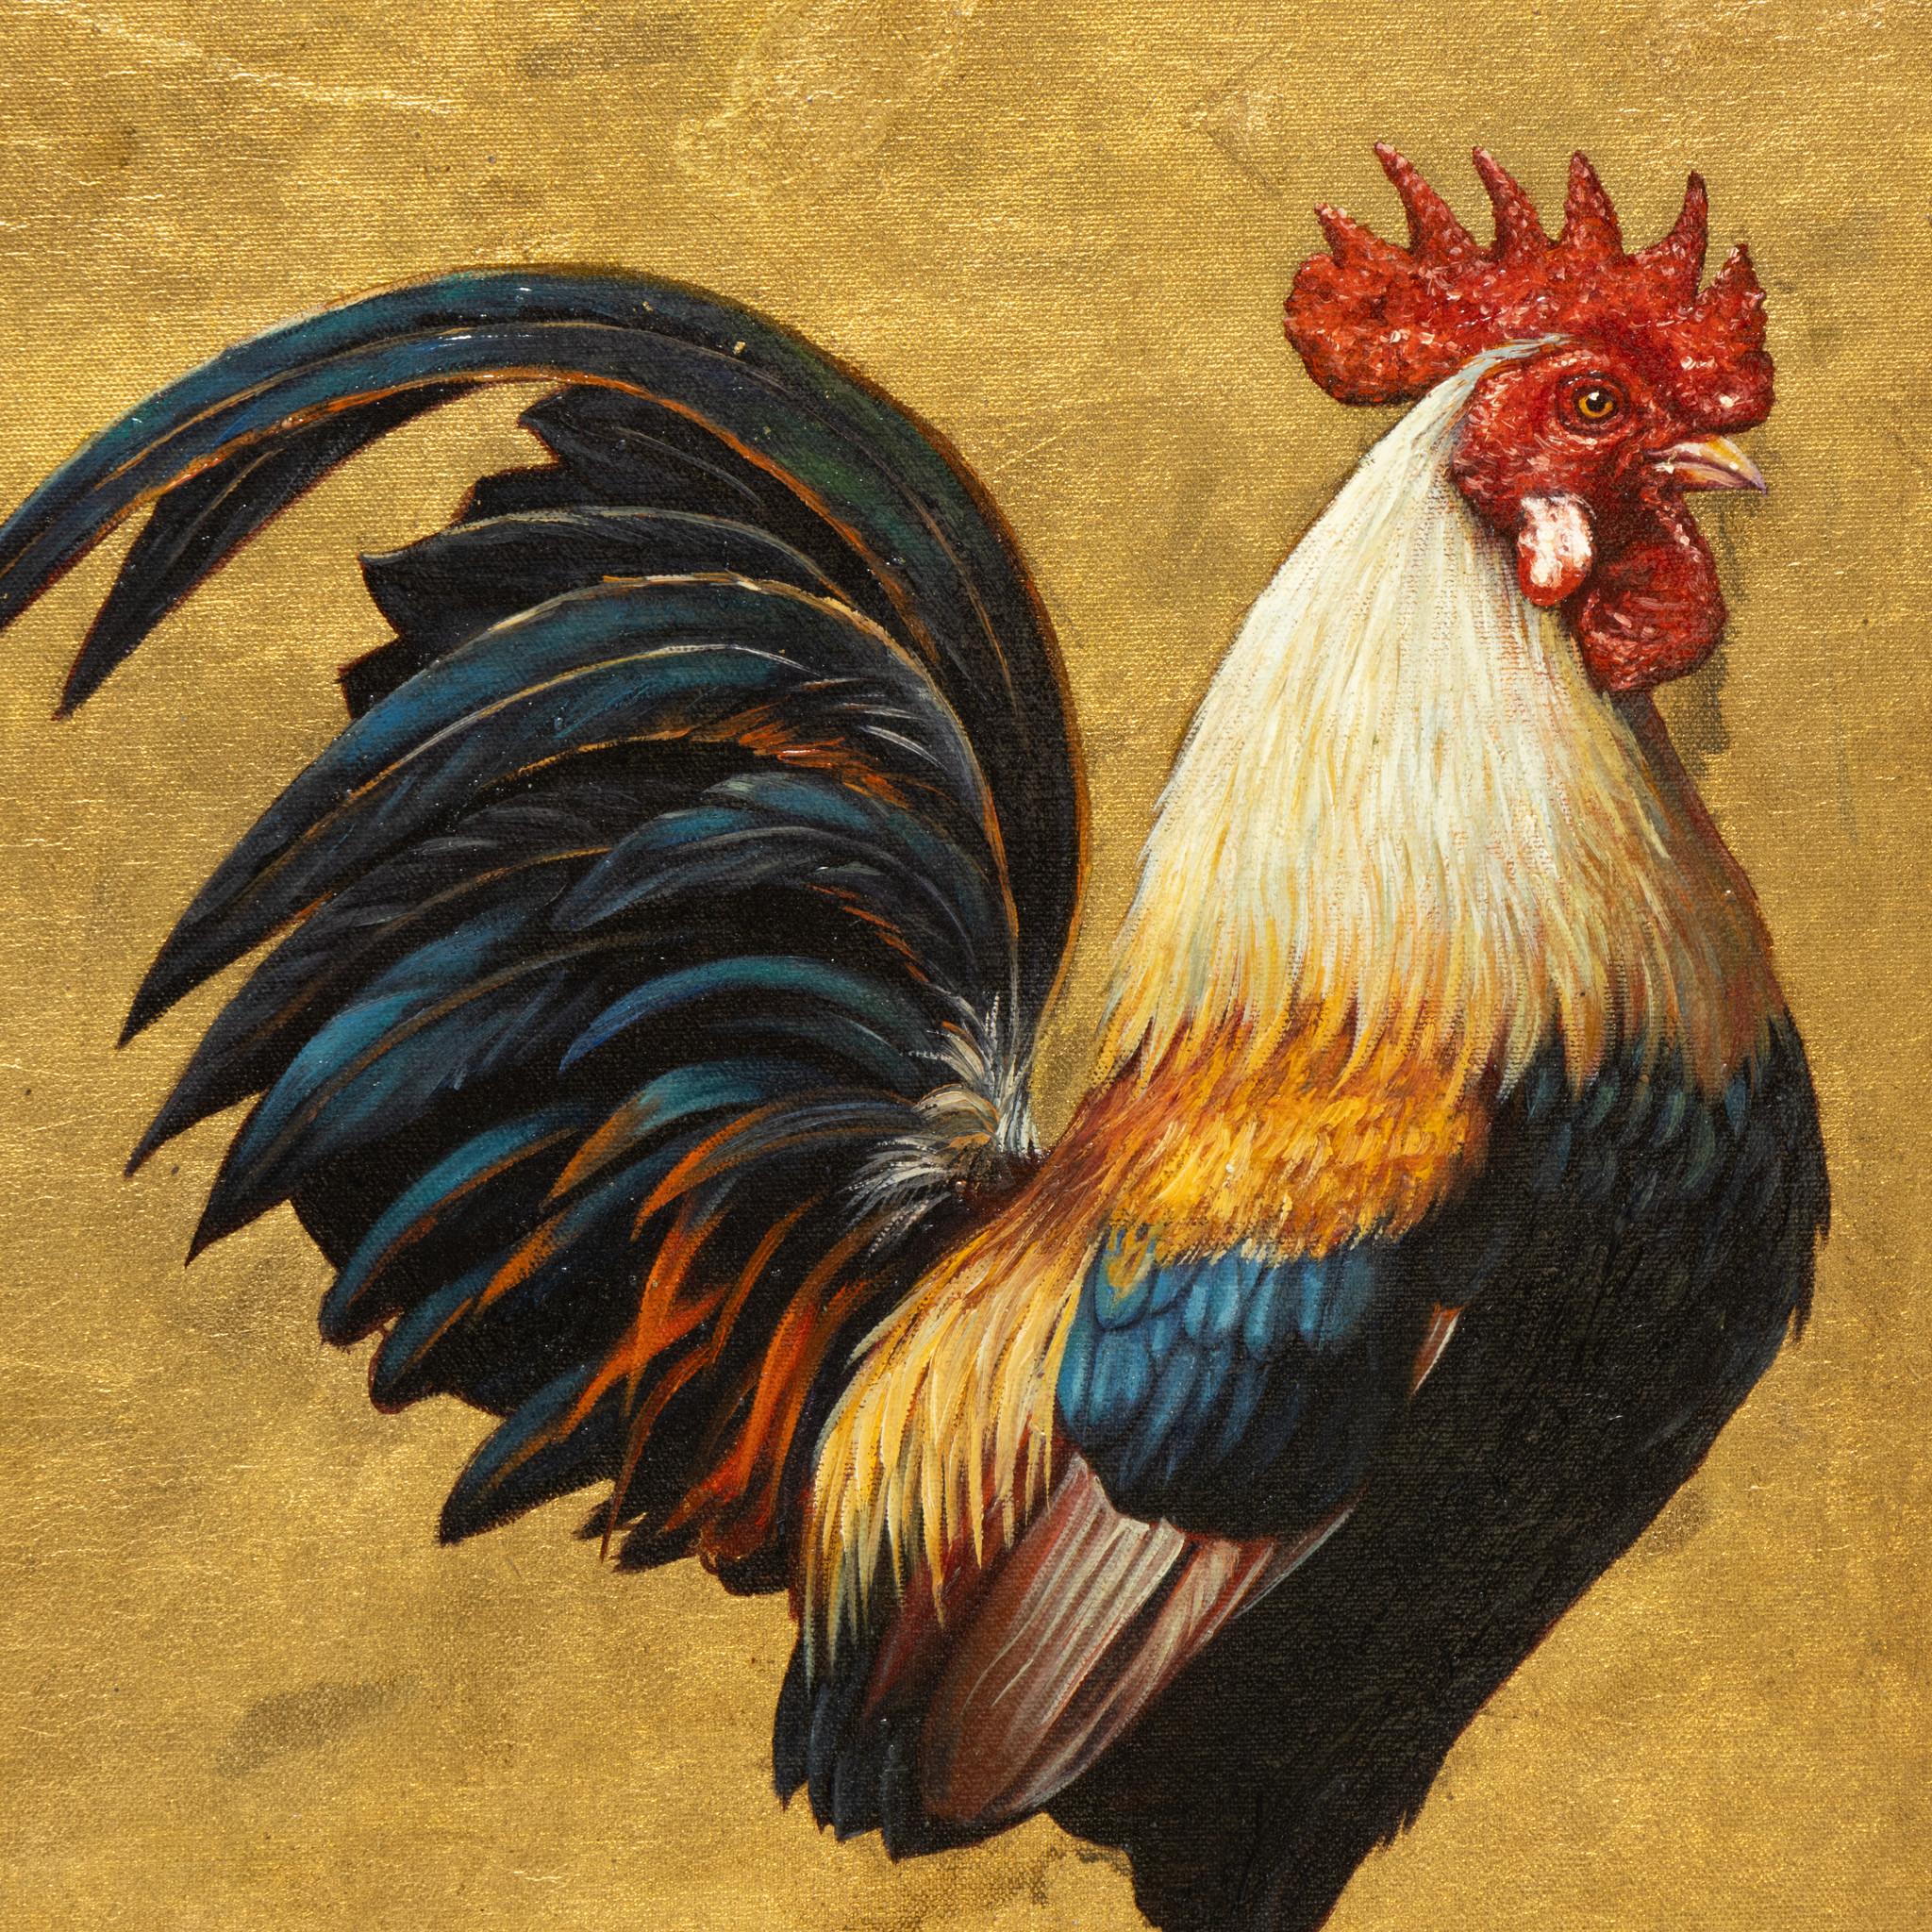 Peinture à l'huile originale de E. Tapia. La pièce représente un coq coloré sur fond d'or, sur de l'herbe. Le coq présente des couleurs bleu, or, rouge, crème et vert. Une peinture bien faite qui serait bien exposée dans une ferme ou une maison